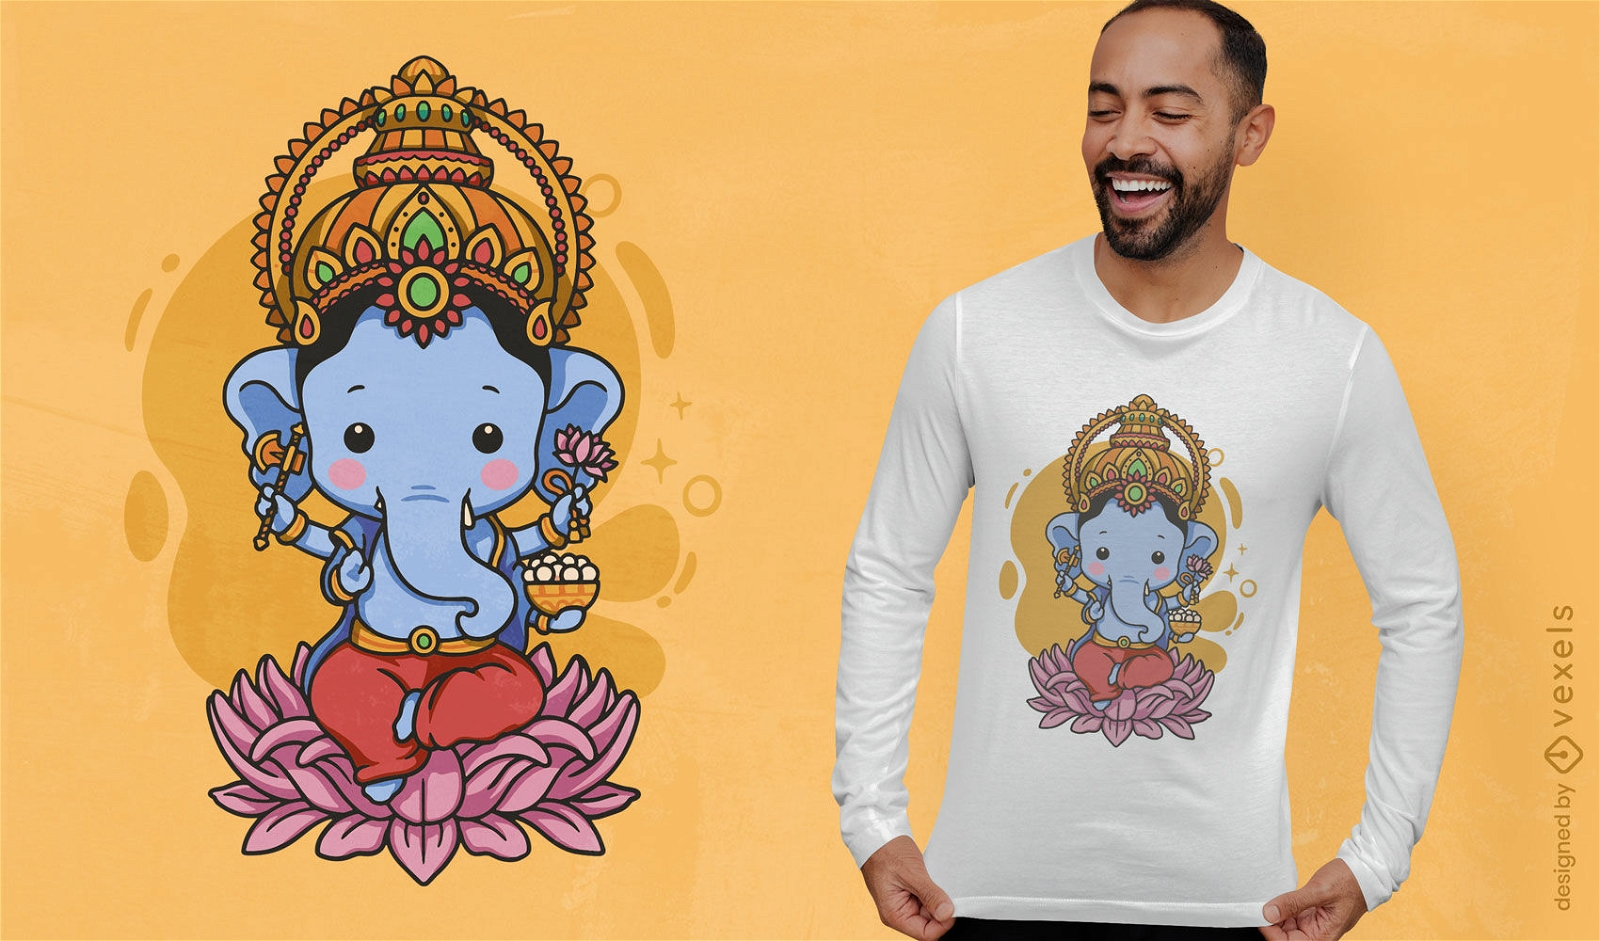 Dise?o lindo de la camiseta de Lord Ganesh